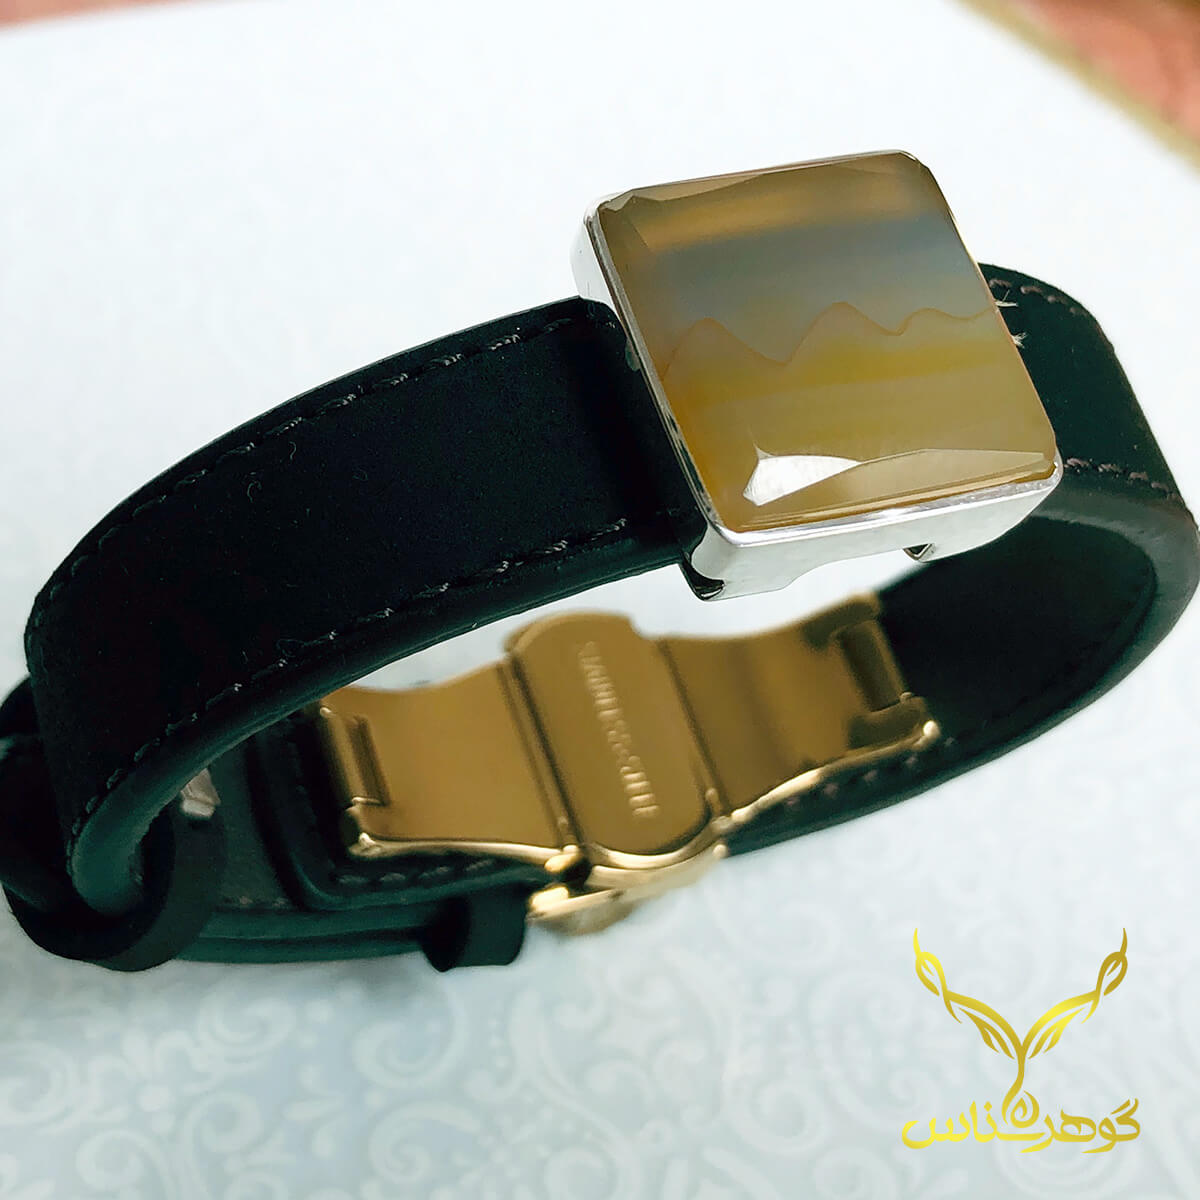 دستبند چرم و عقیق کدSD001 یک دستبند دستسار به همراه عقیق اصل یمانی ساخته شده توسط جواهرساز دهقانی مدیریت طلاسازی هرمز و فروشگاه آنلاین گوهرشناس